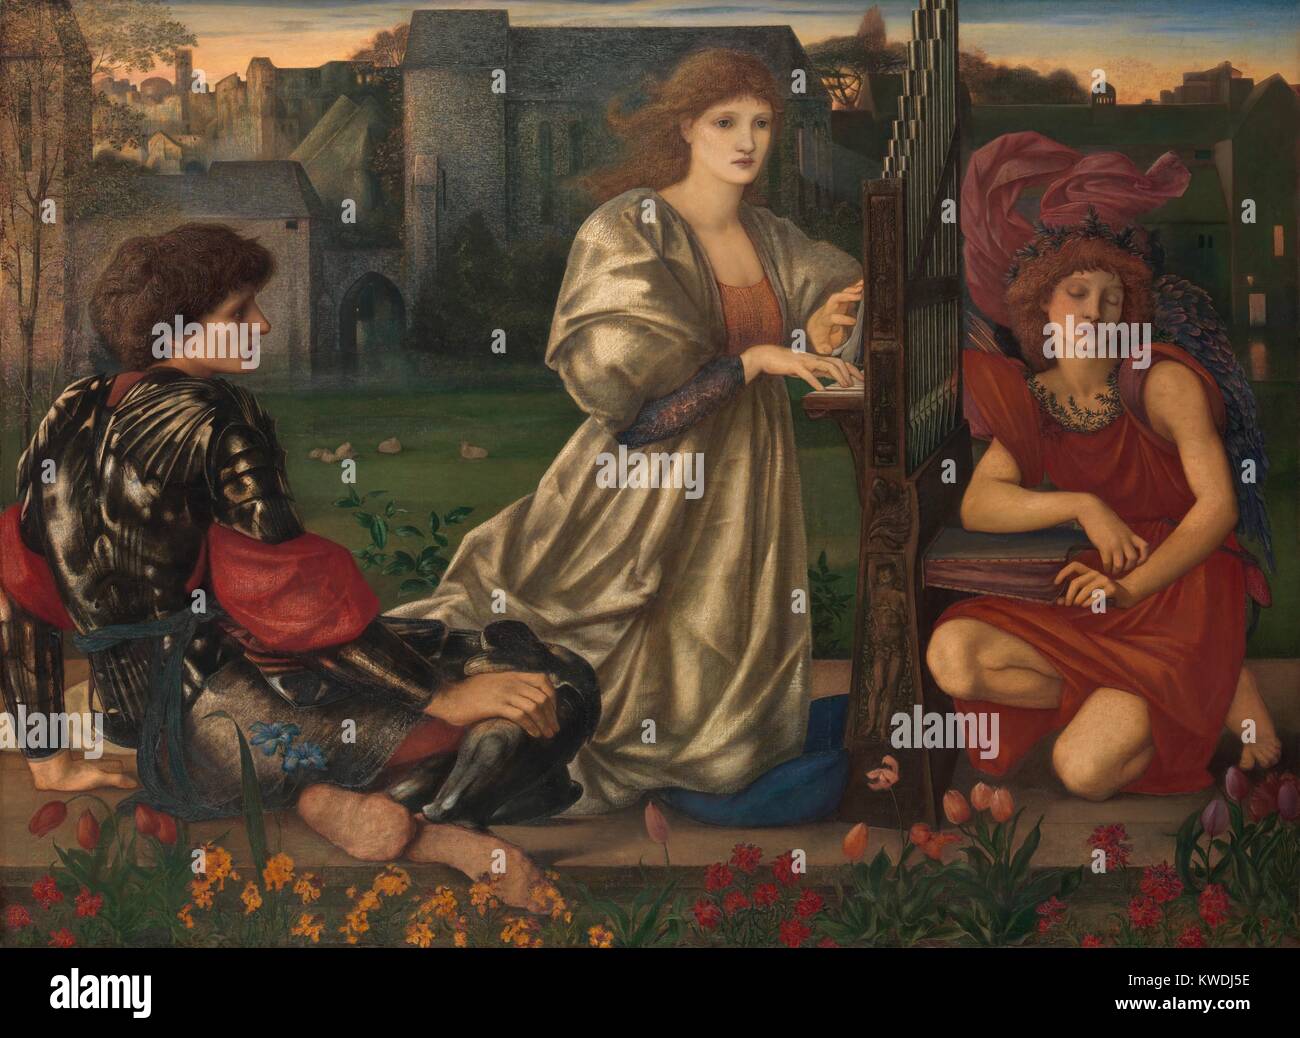 La chanson d'amour, par Sir Edward Burne-Jones, 1868-77, de la peinture, huile sur toile. Au centre, une jeune femme s'agenouille alors qu'elle joue un petit orgue à tuyaux. Le jeune homme à gauche porte des armures de fantaisie et se retourne vers le centre d'images. Sur la droite se trouve un Cupidon ailé, occupé les organes de pompage soufflets (BSLOC 2017 9 133) Banque D'Images